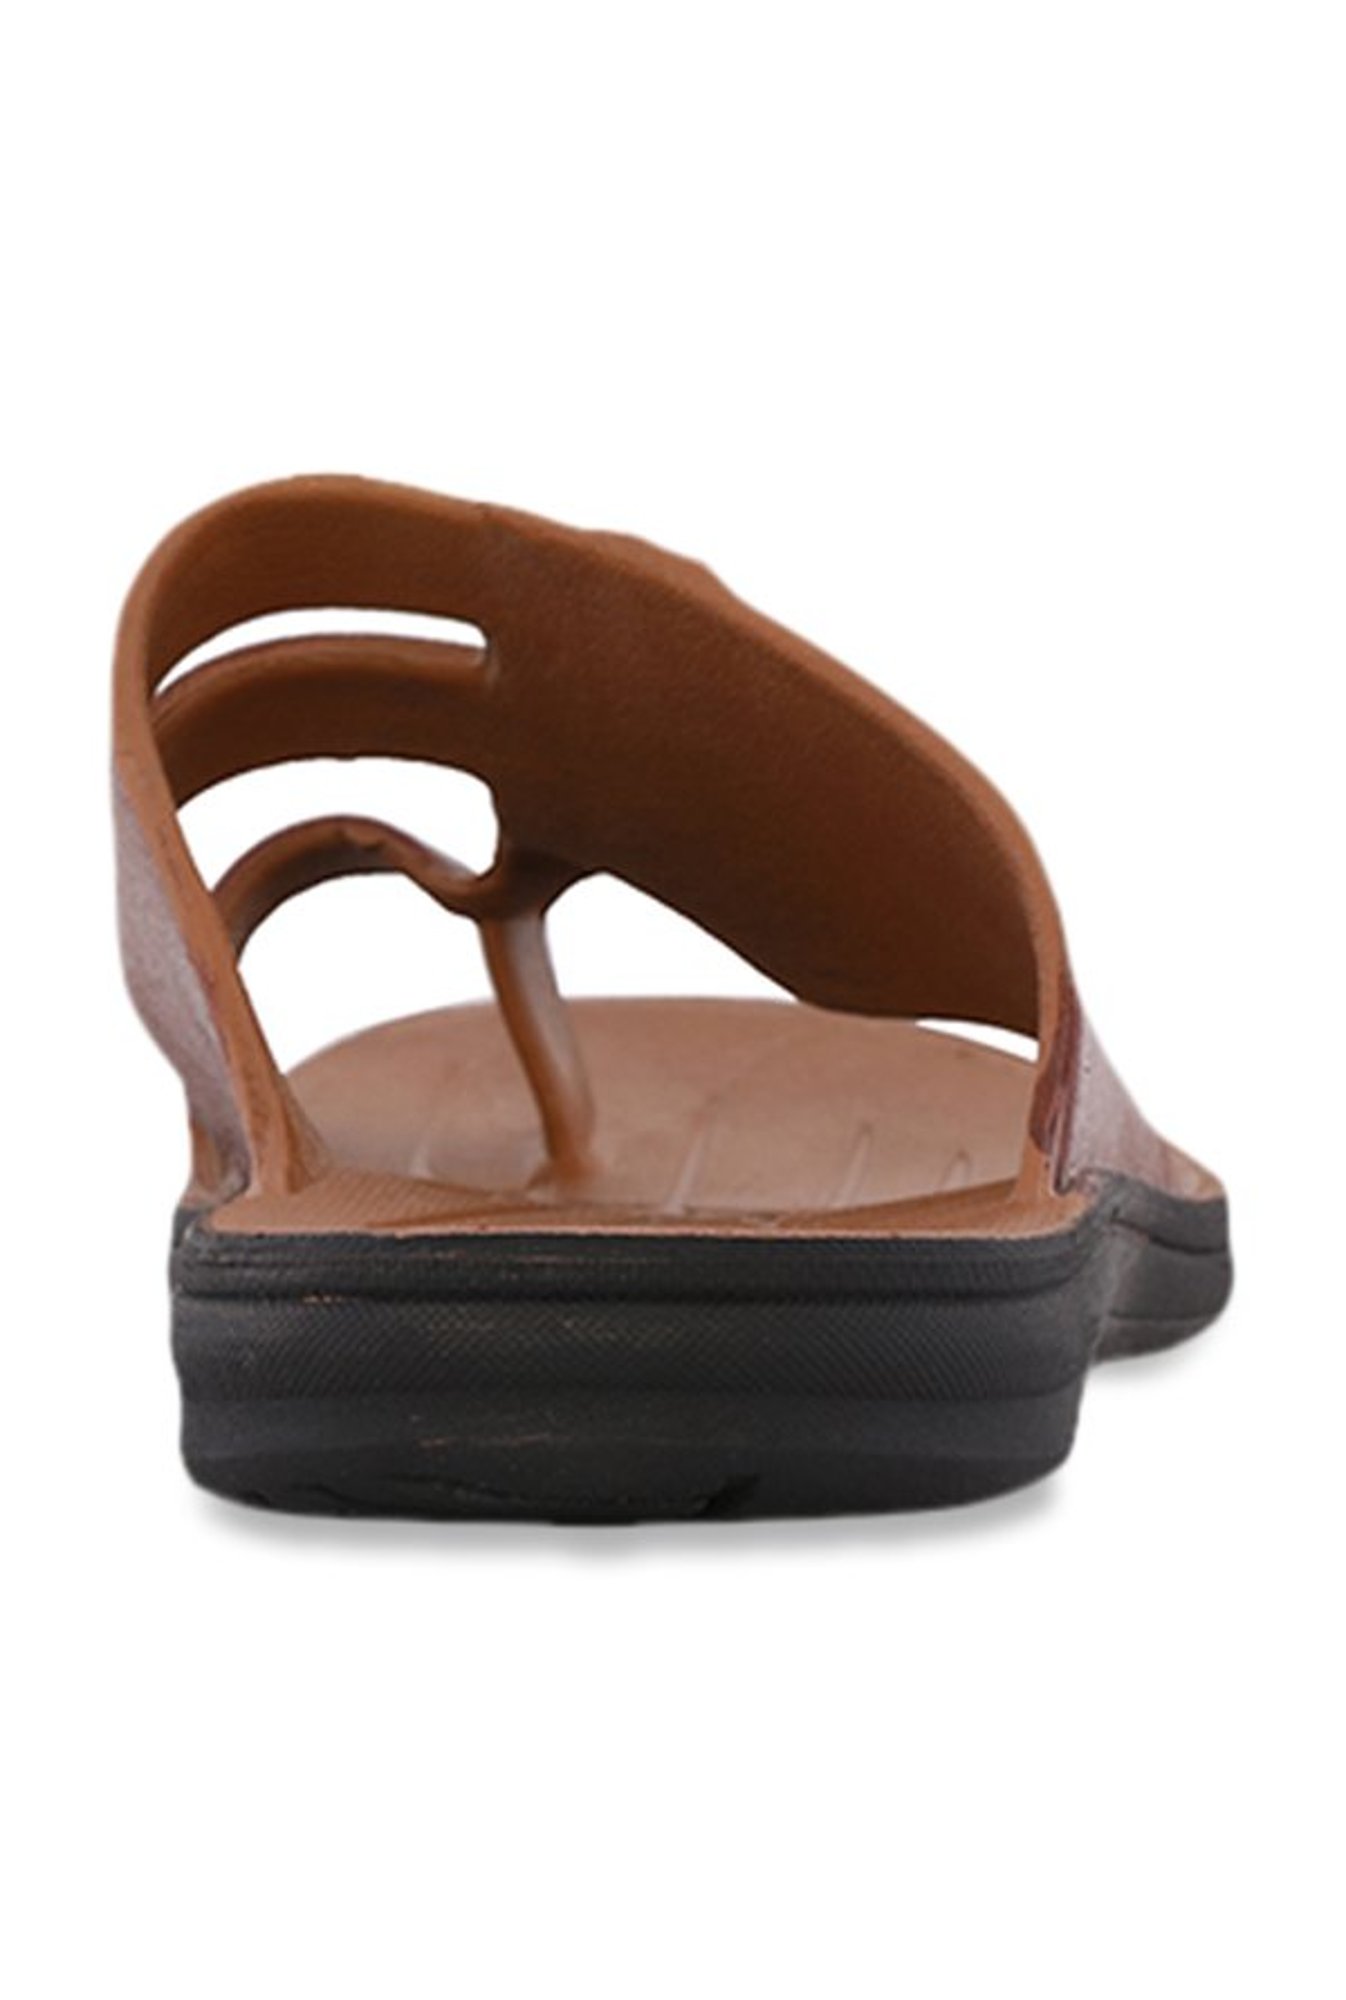 bata sandak shoes price